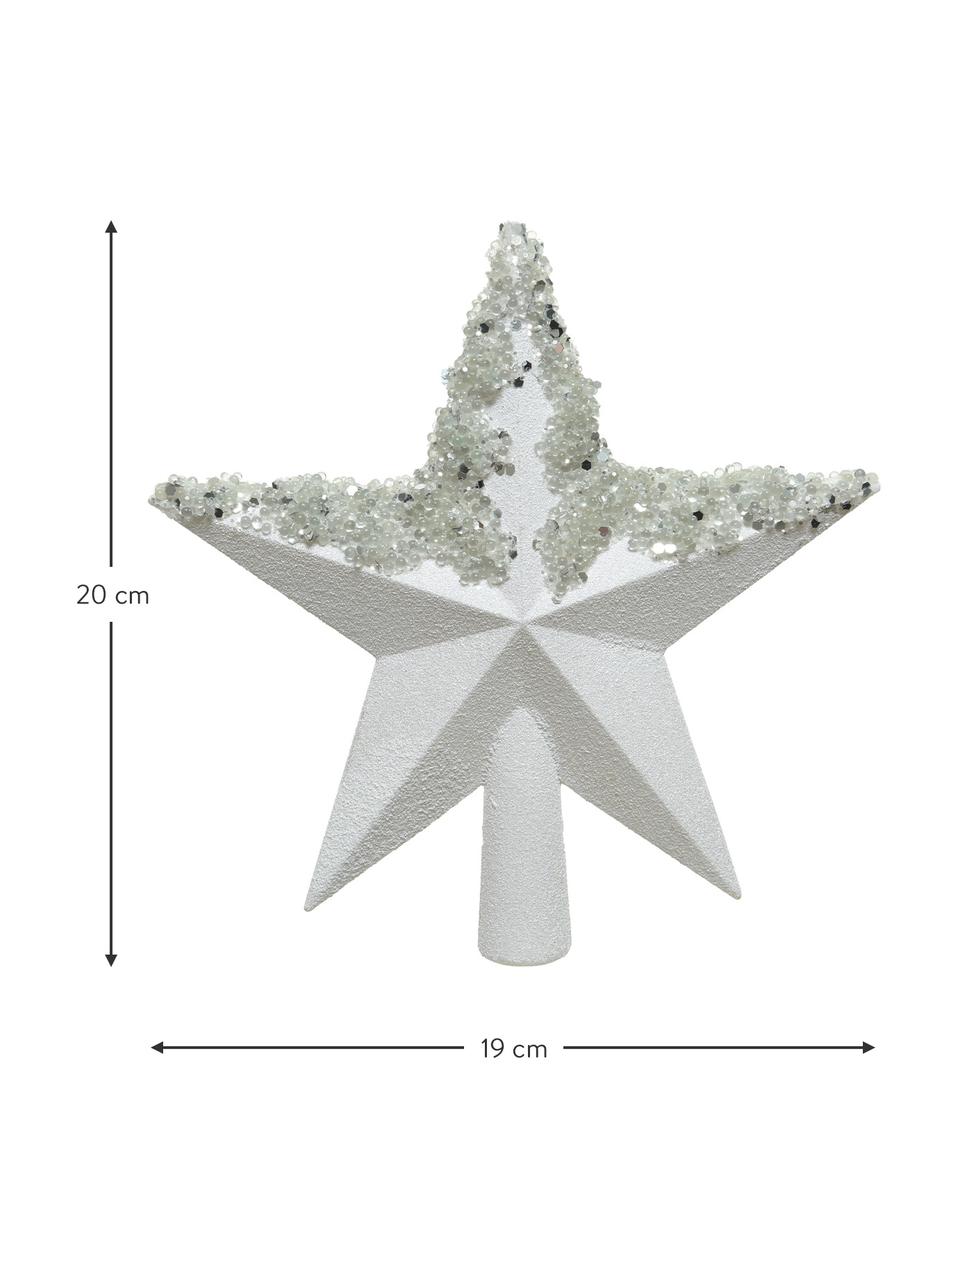 Nerozbitná vánoční špice Abella, V 20 cm, Umělá hmota, Stříbrná, bílá, Š 19 cm, V 20 cm